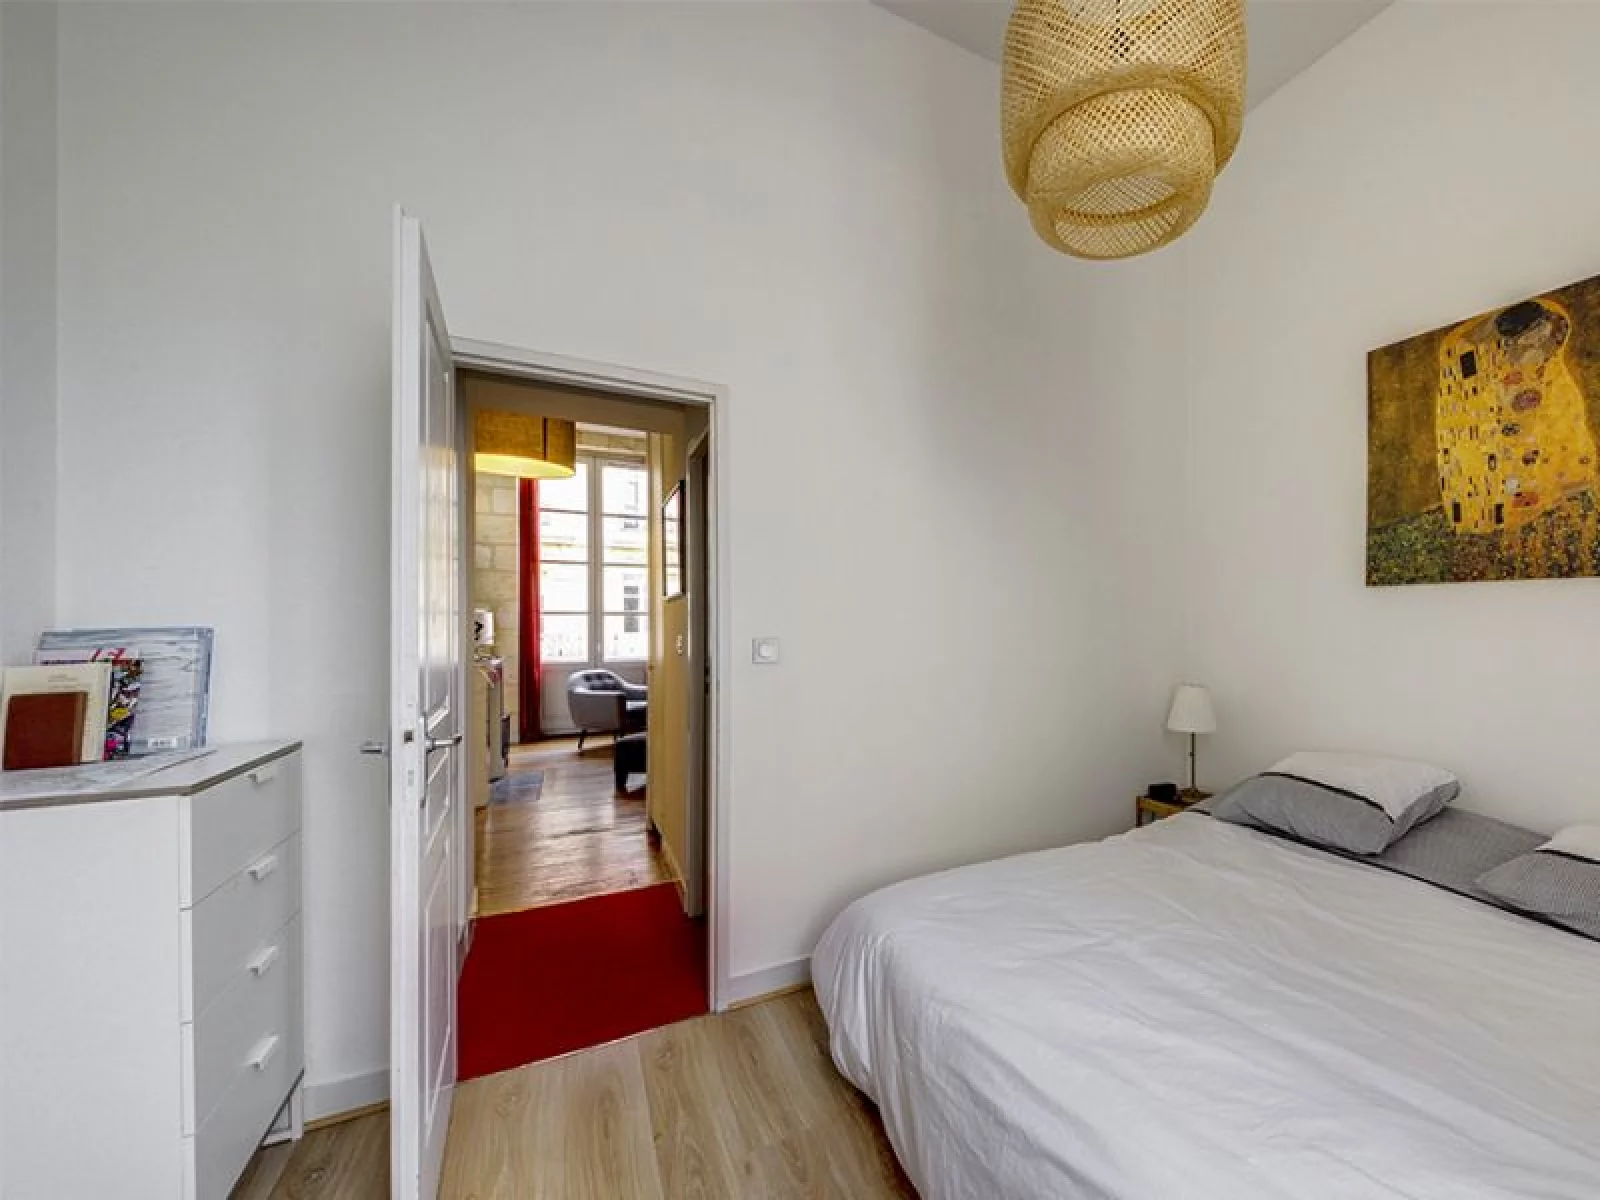 Location appartement meublé 2 pièces 45m²  (Bordeaux centre)